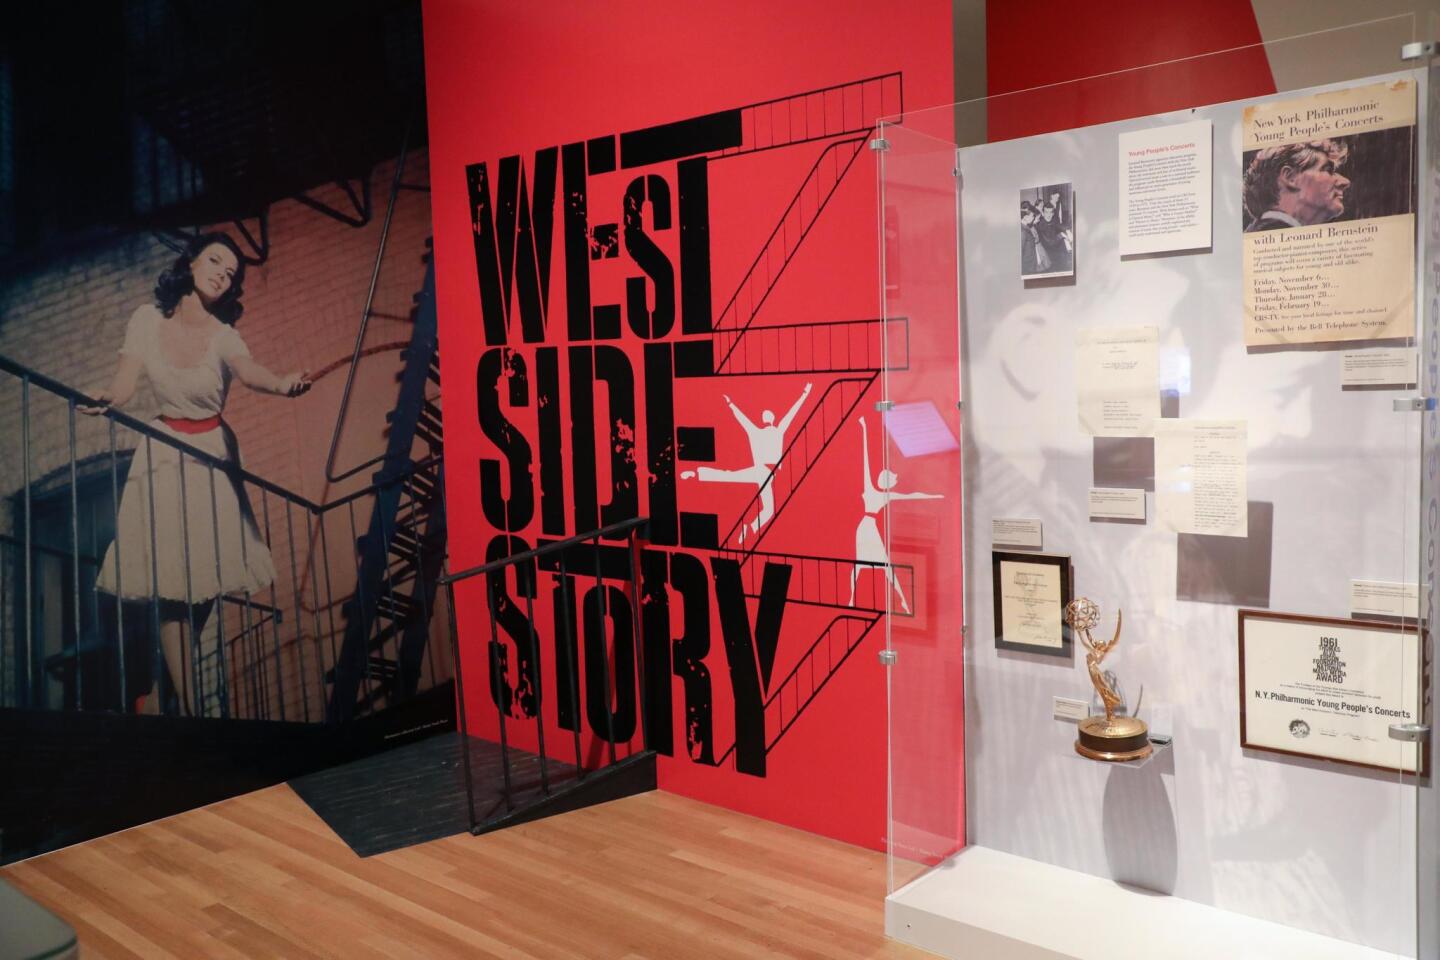 La exposición, que se inauguró en septiembre del año pasado en Washington y después se vio en Nueva York, concluye con una cabina donde el público puede acceder para cantar temas de "West Side Story".